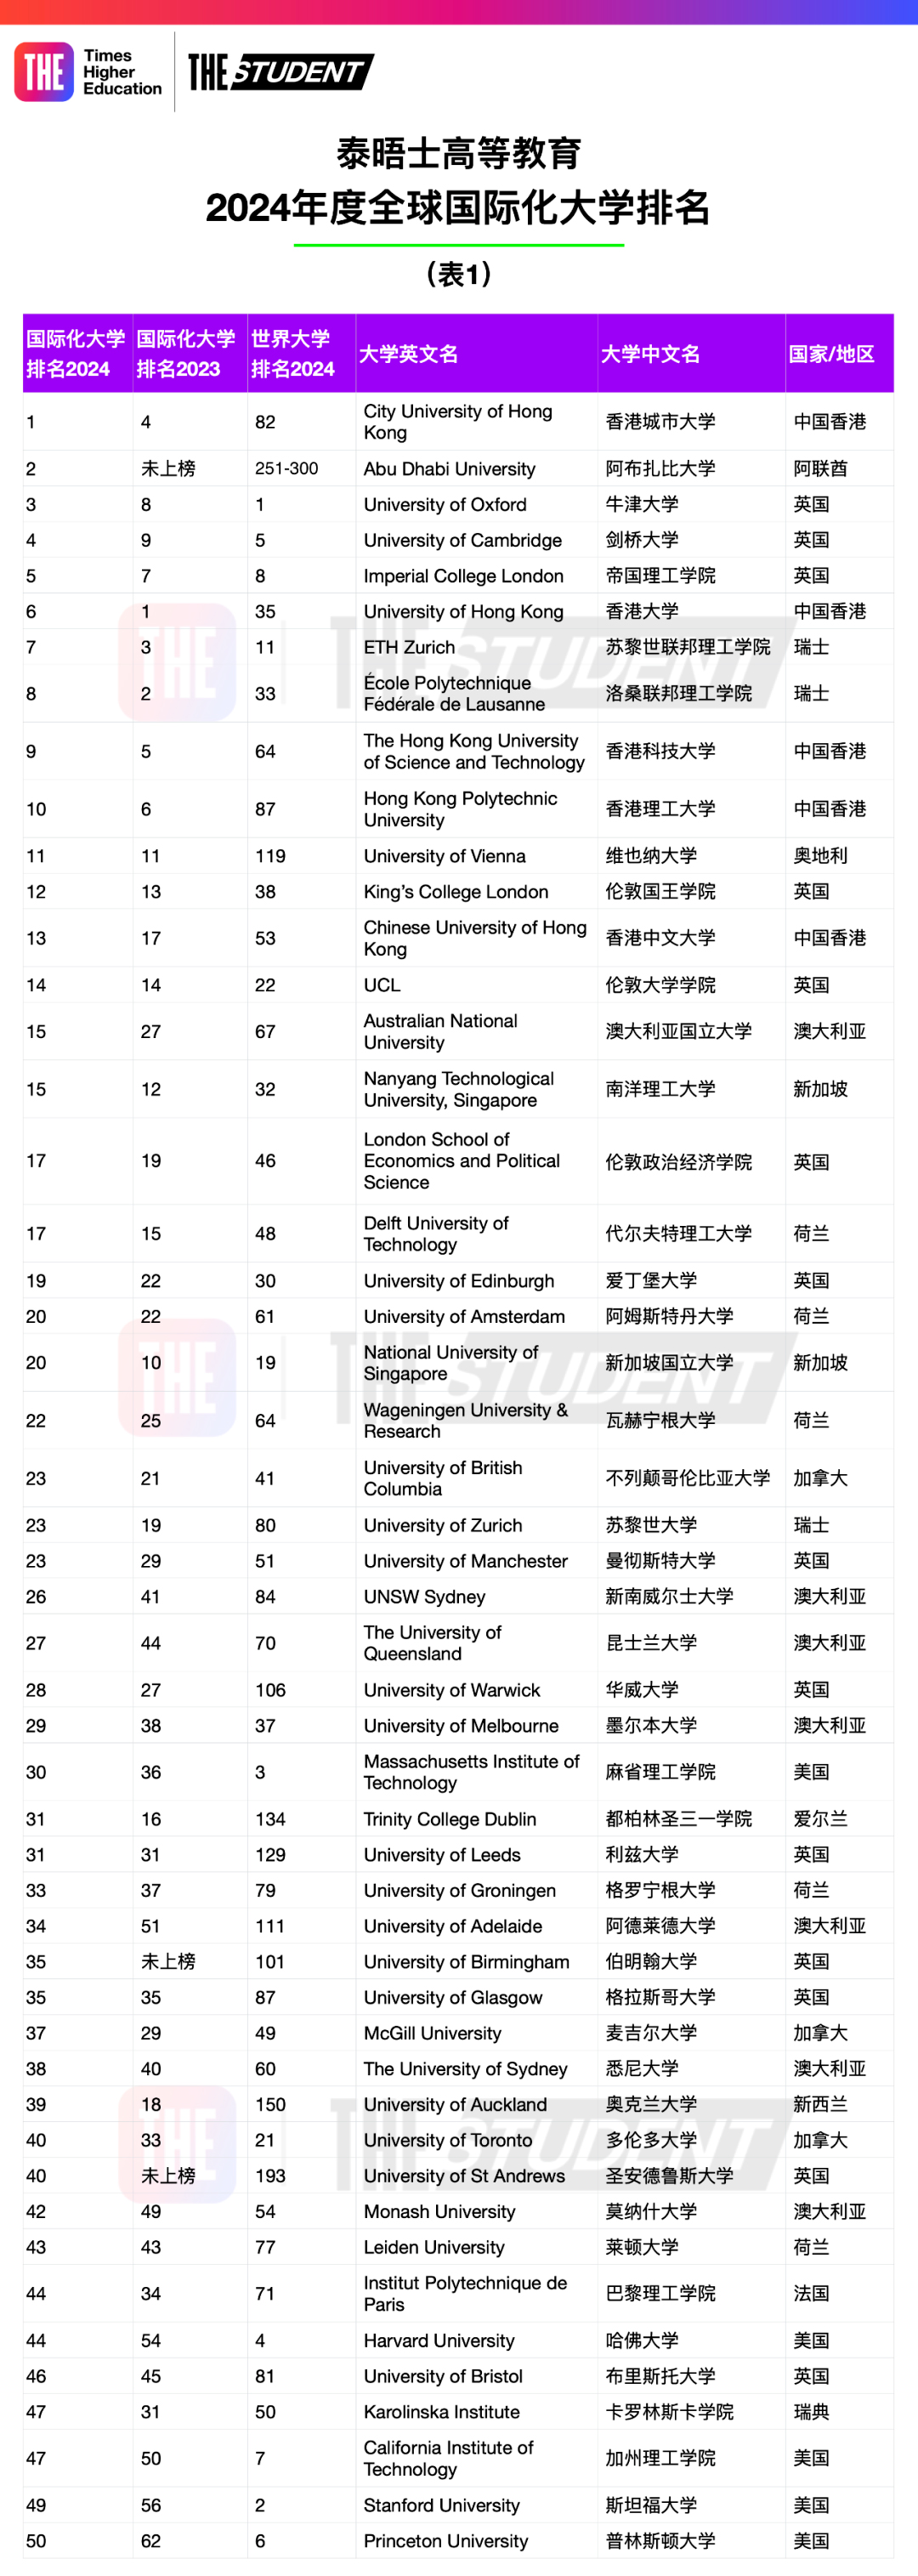 【重磅】泰晤士高等教育发布2024全球国际化大学榜单！